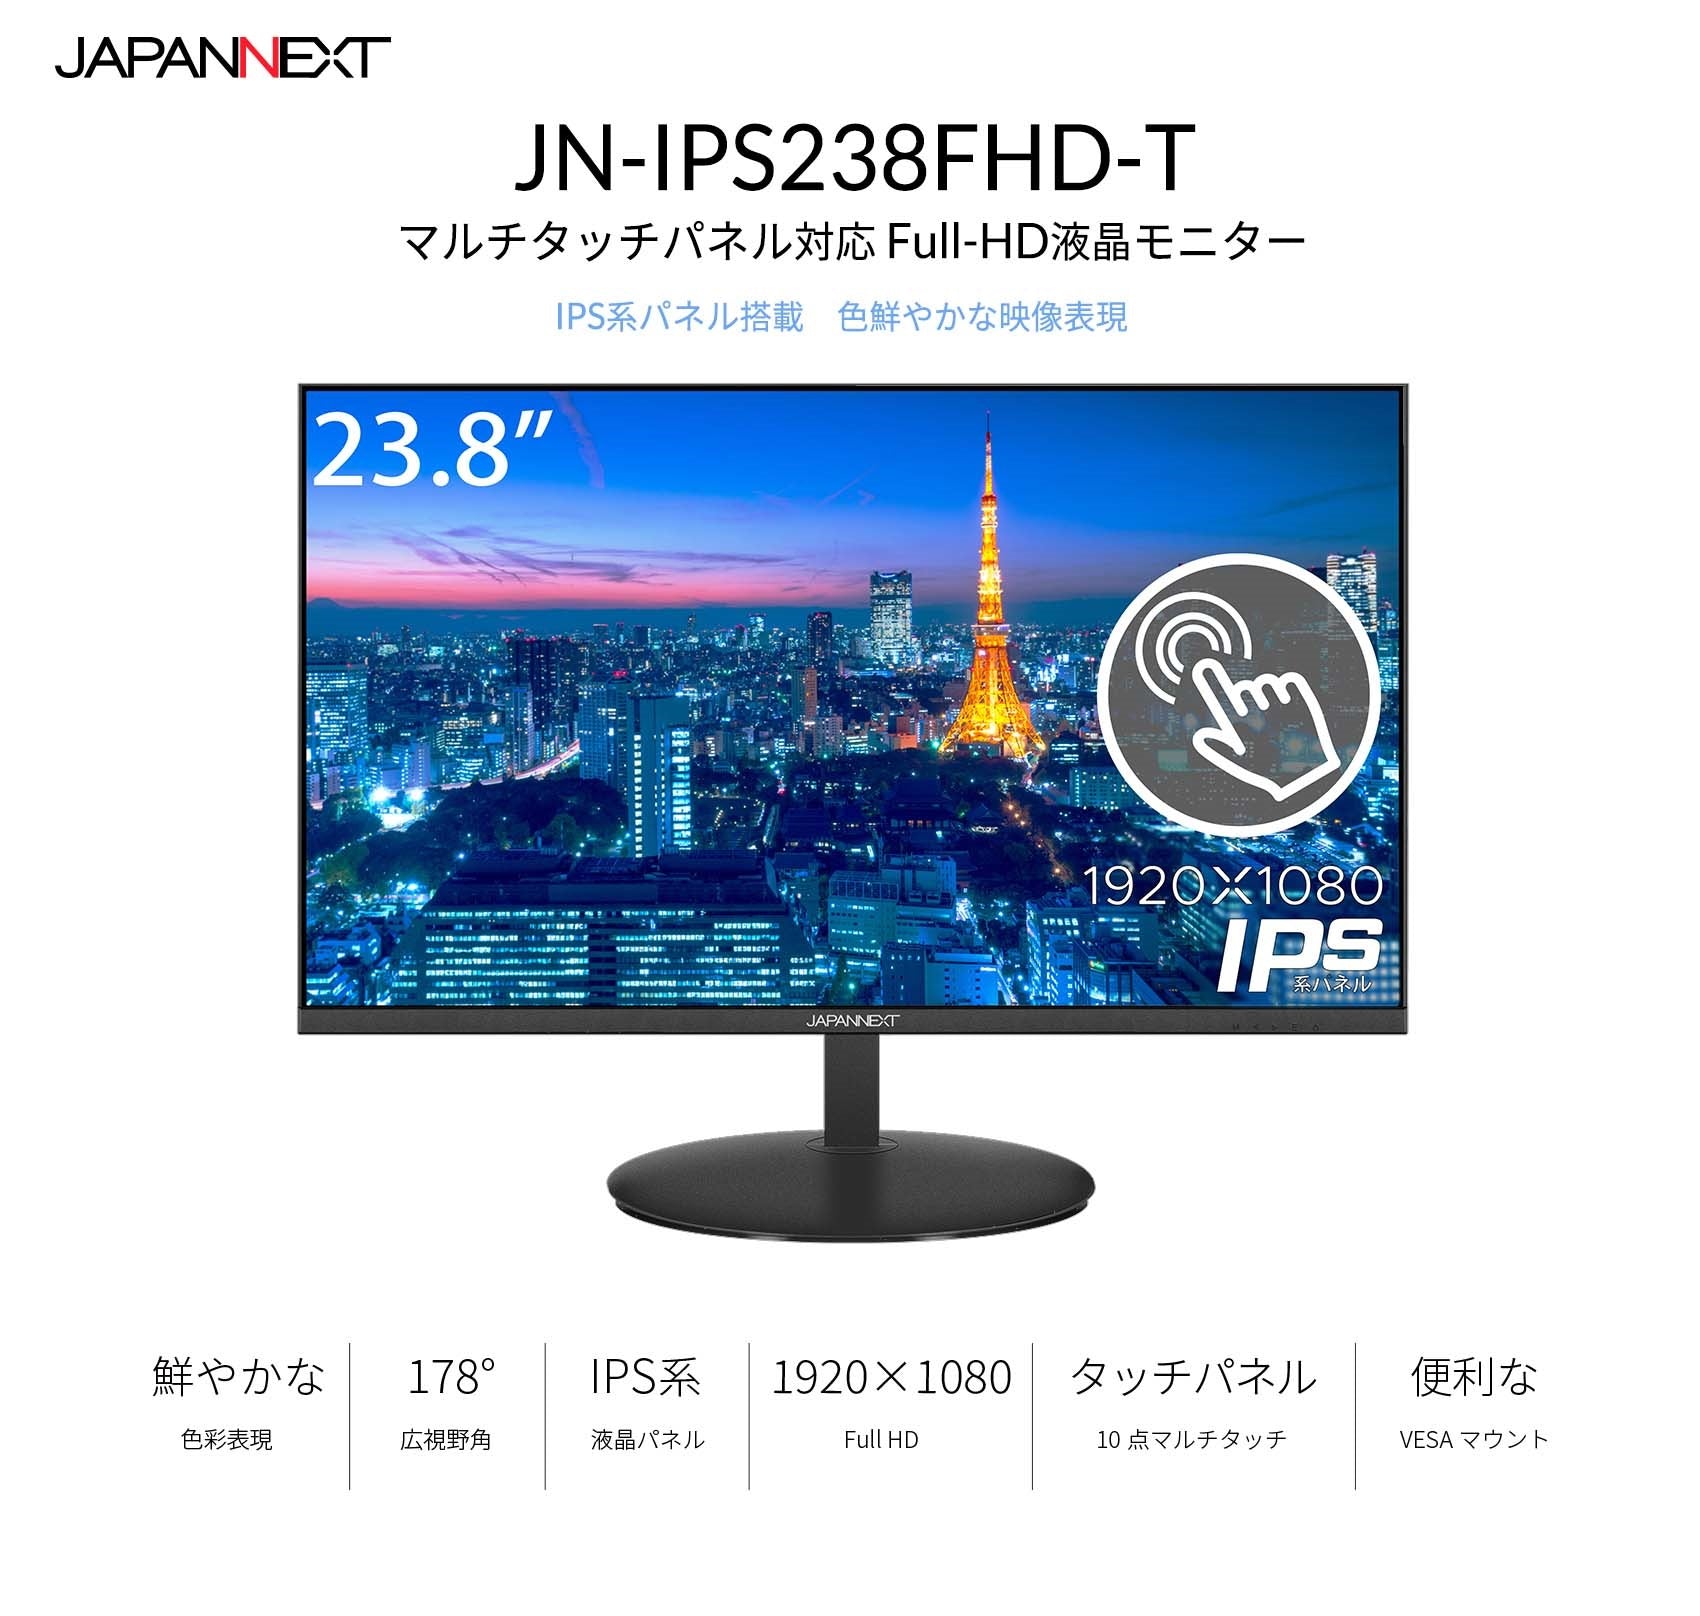 JAPANNEXT 23.8型IPSフルHDパネル搭載 タッチパネル対応モニター JN 